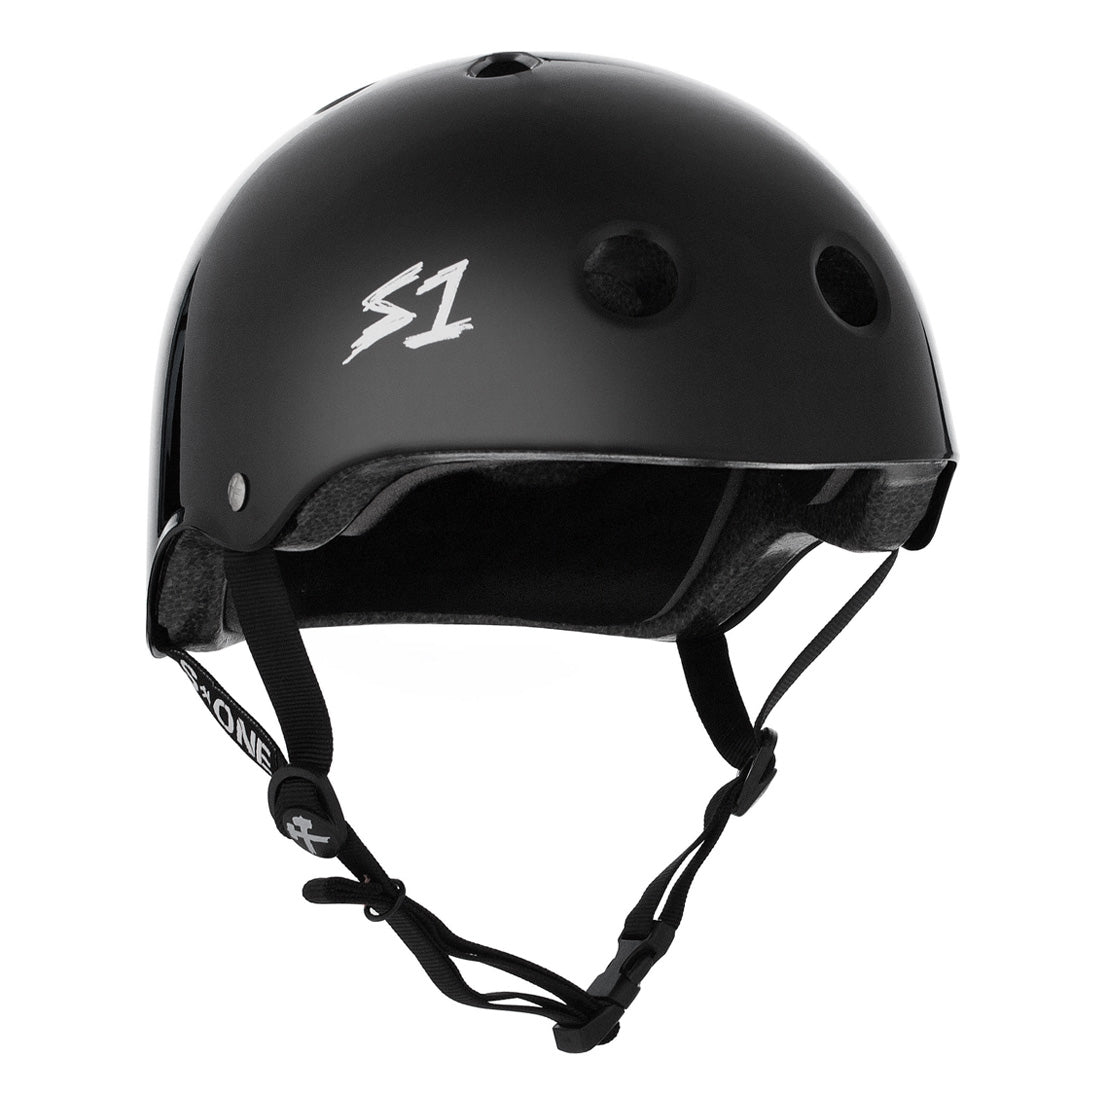 S-One Lifer Helmet - Black Gloss Helmets